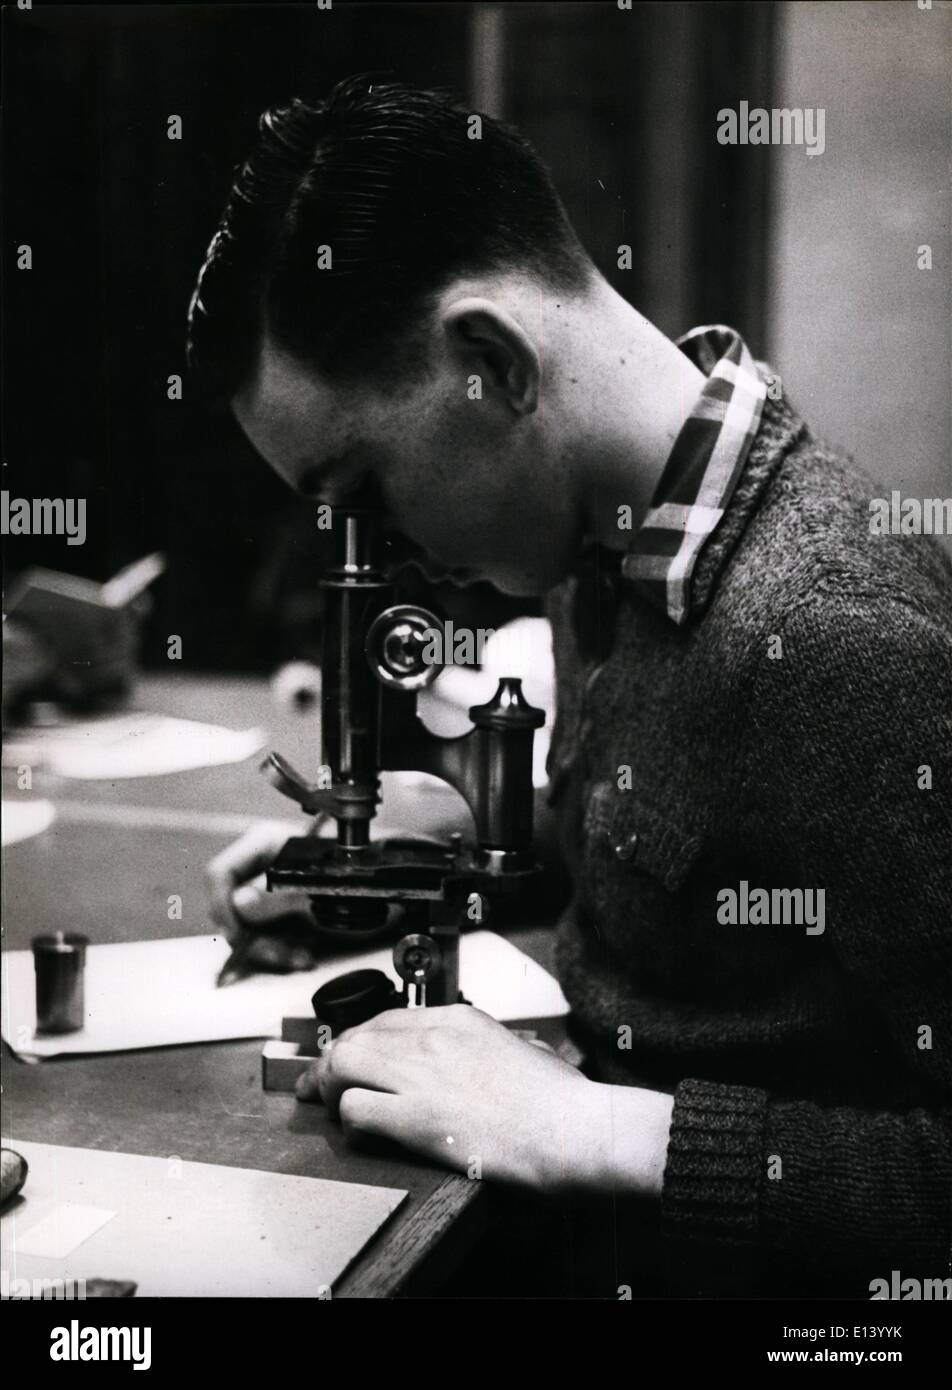 27 mars 2012 - Jeune historien naturel ; les jeunes peuvent utiliser l'équipement du musée, comme les microscopes, pour leurs propres études. Ce Banque D'Images